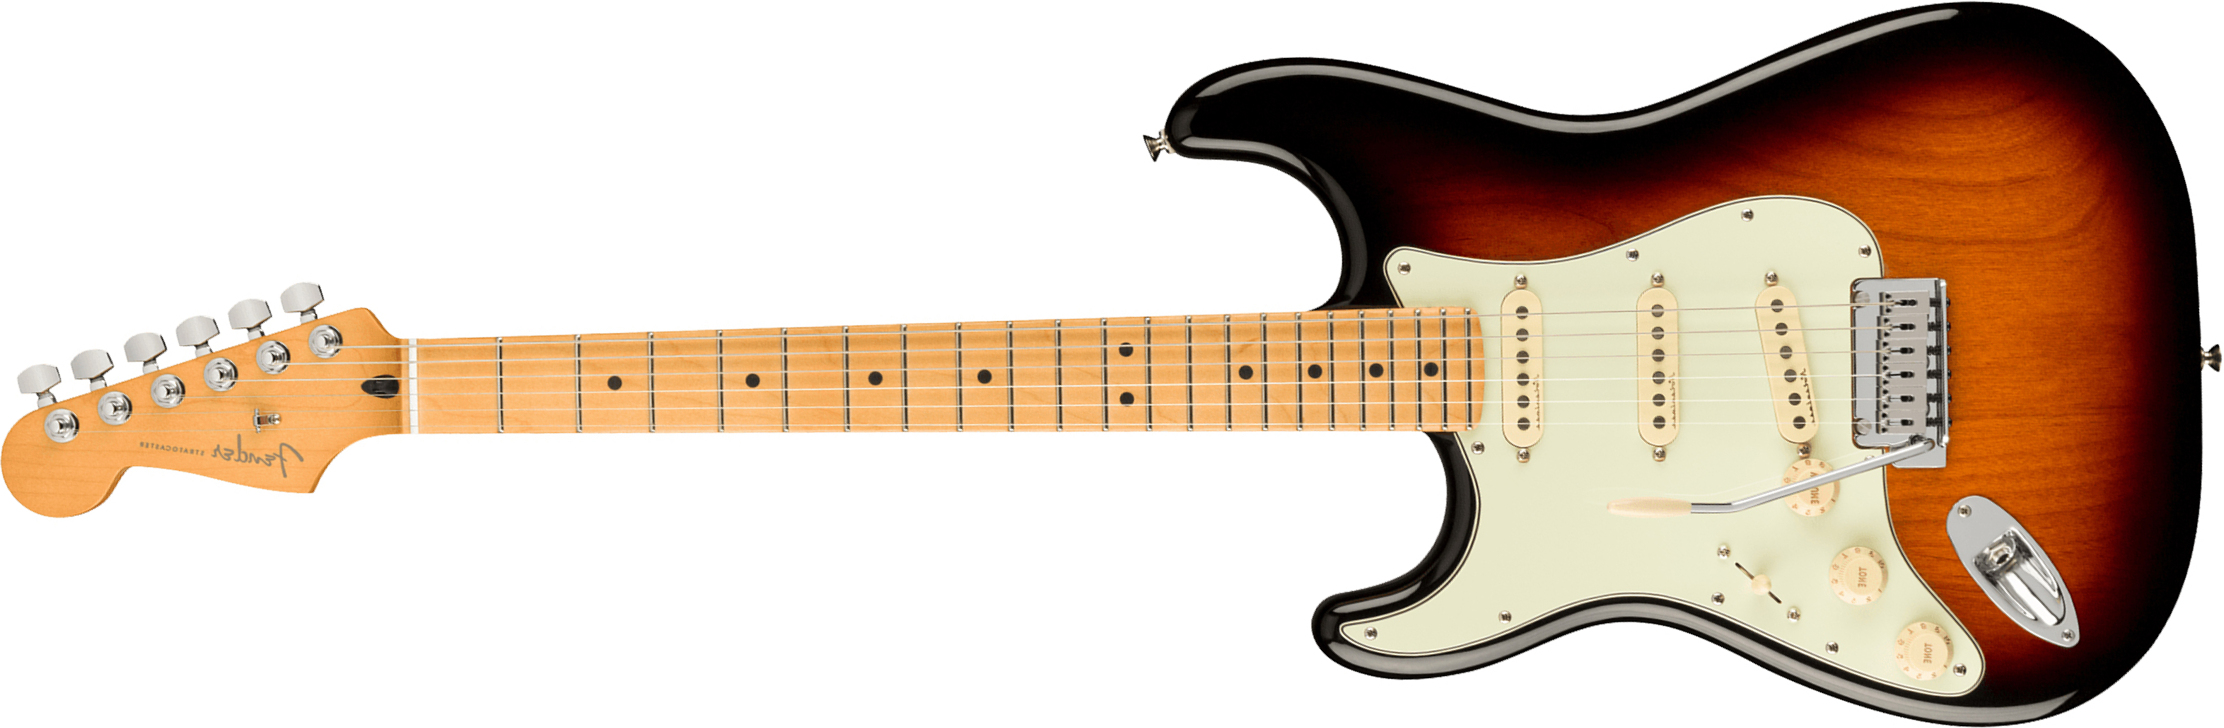 Fender Strat Player Plus Lh Mex Gaucher 3s Trem Mn - 3-color Sunburst - Guitare Électrique Gaucher - Main picture